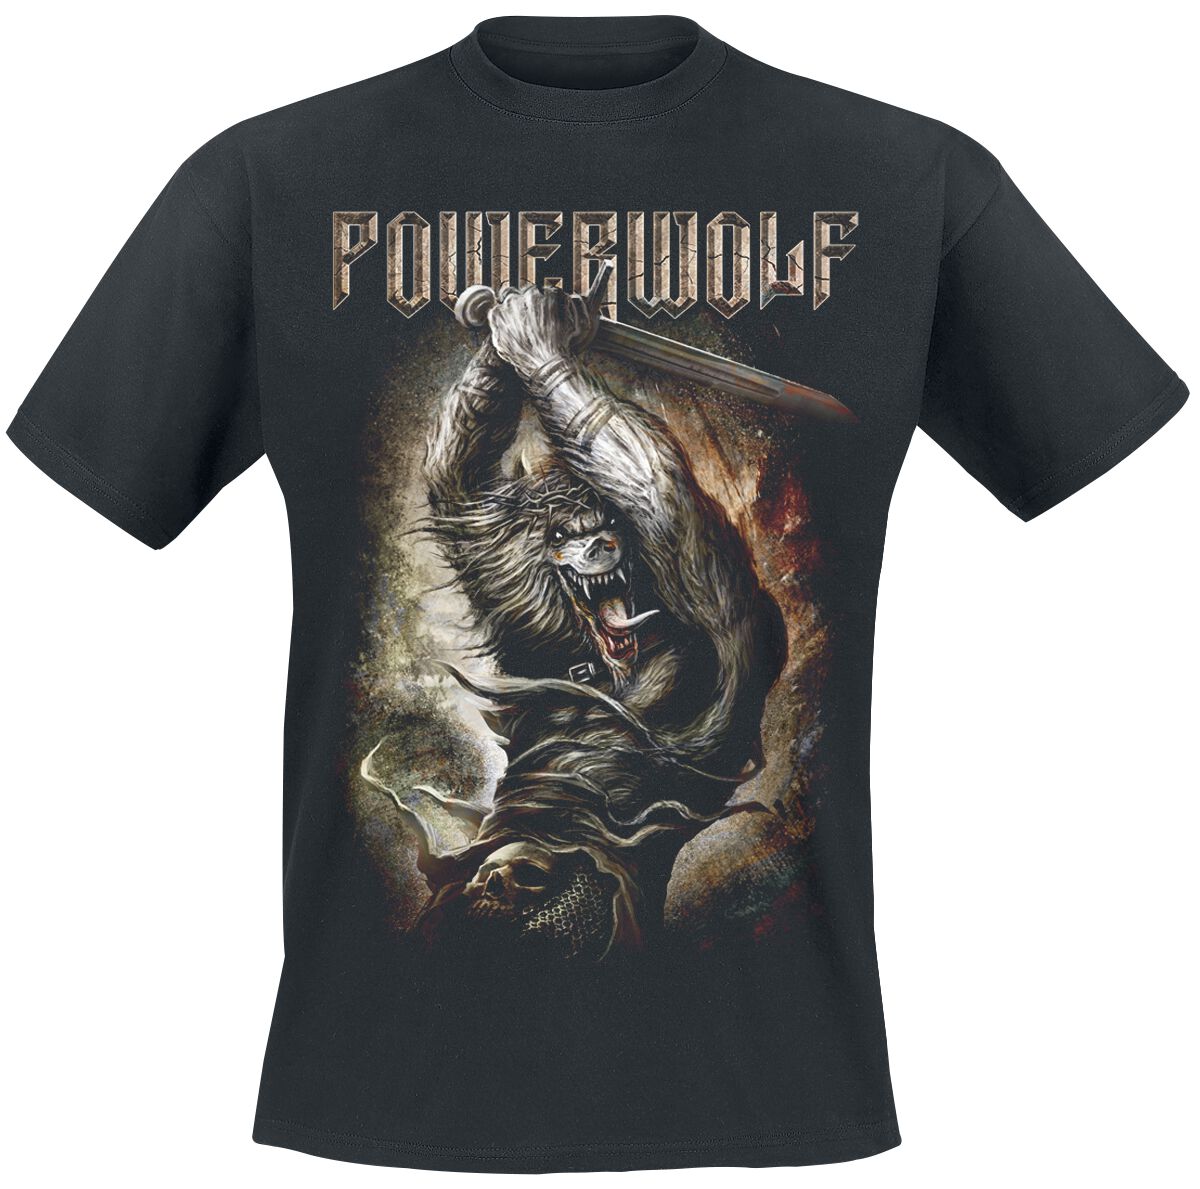 Powerwolf T-Shirt - Wolves Of War - S bis 5XL - für Männer - Größe S - schwarz  - Lizenziertes Merchandise!